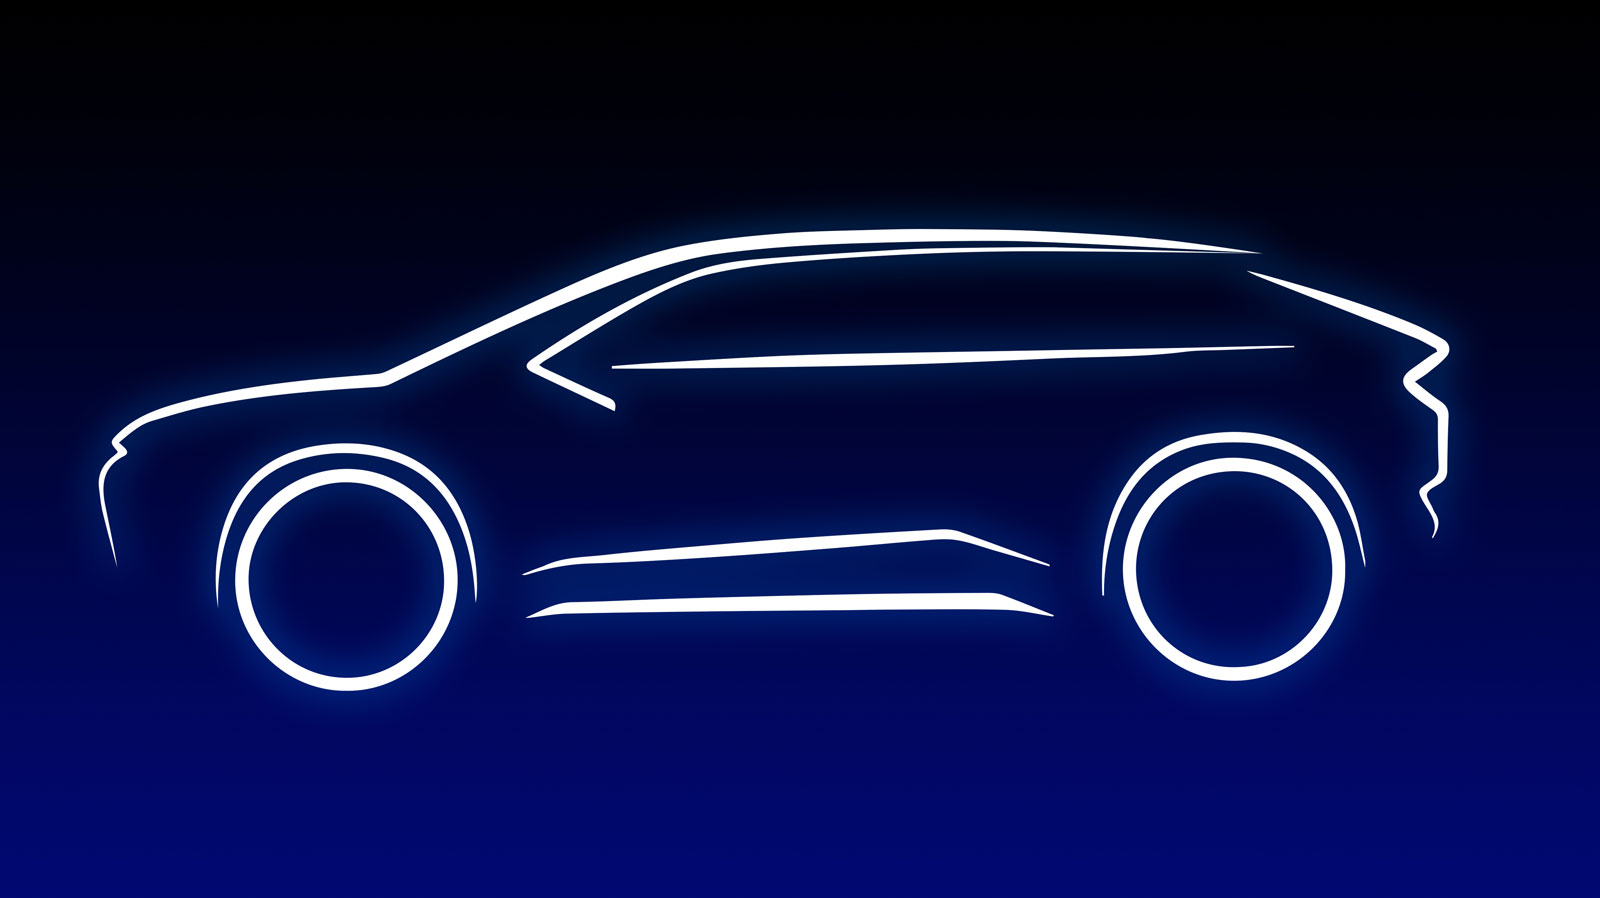 2021年発表予定、スバル・トヨタの共同開発BEVは、欧州を席巻できるのか。